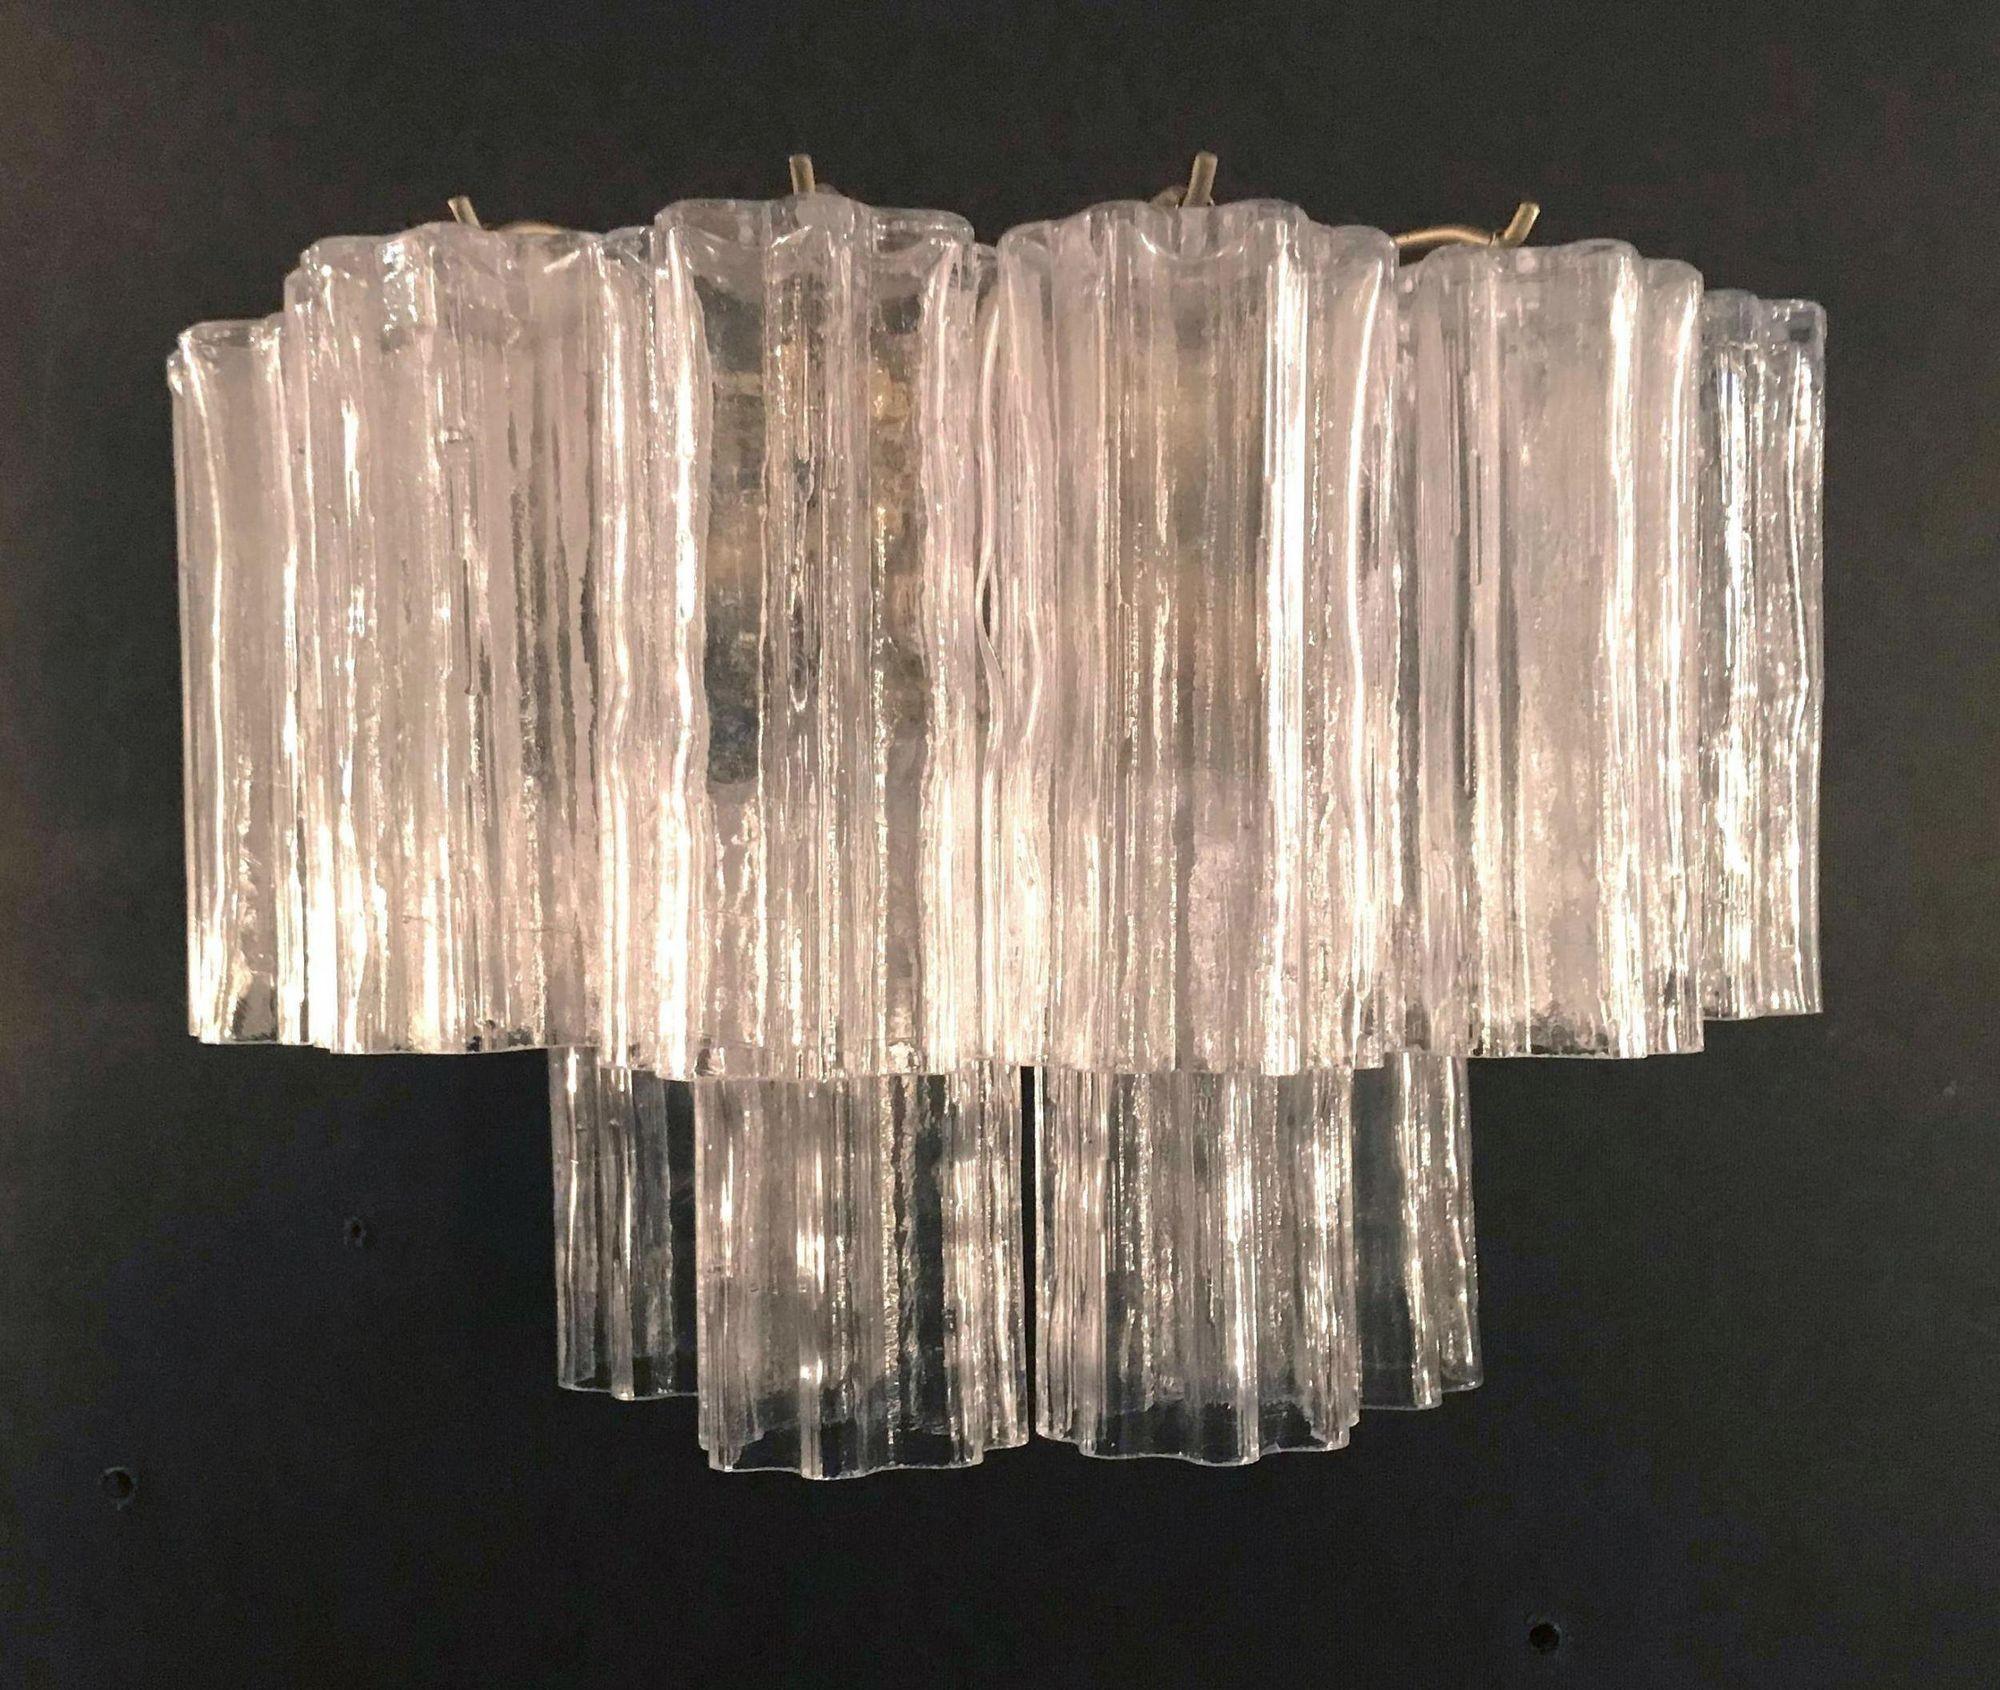 Appliques italiennes vintage avec 12 verres de murano transparents soufflés selon la technique Tronchi, montés sur des cadres en métal doré vieilli, conçues par Venini, vers les années 1960. Fabriquées en Italie.